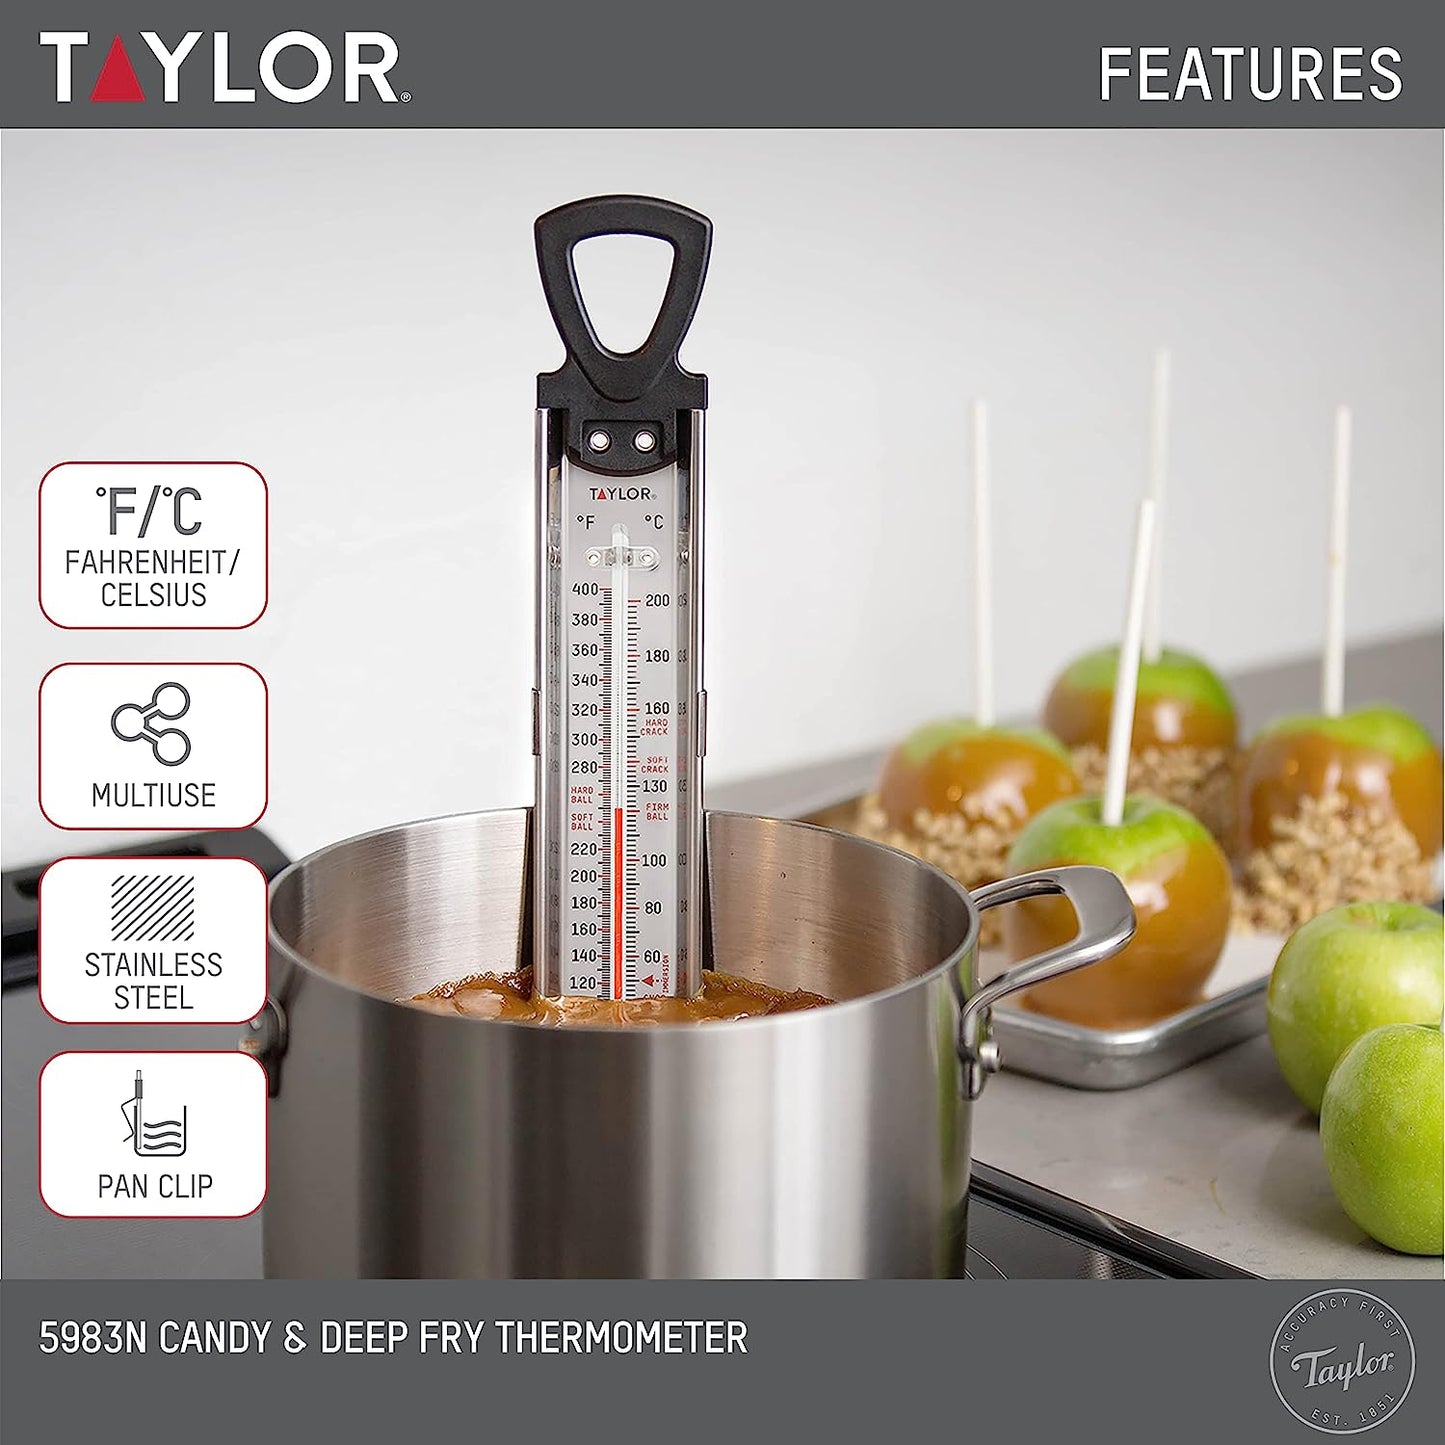 Termometro para caramelo marca Taylor. Ideal para usar en tu cocina. Reposteria